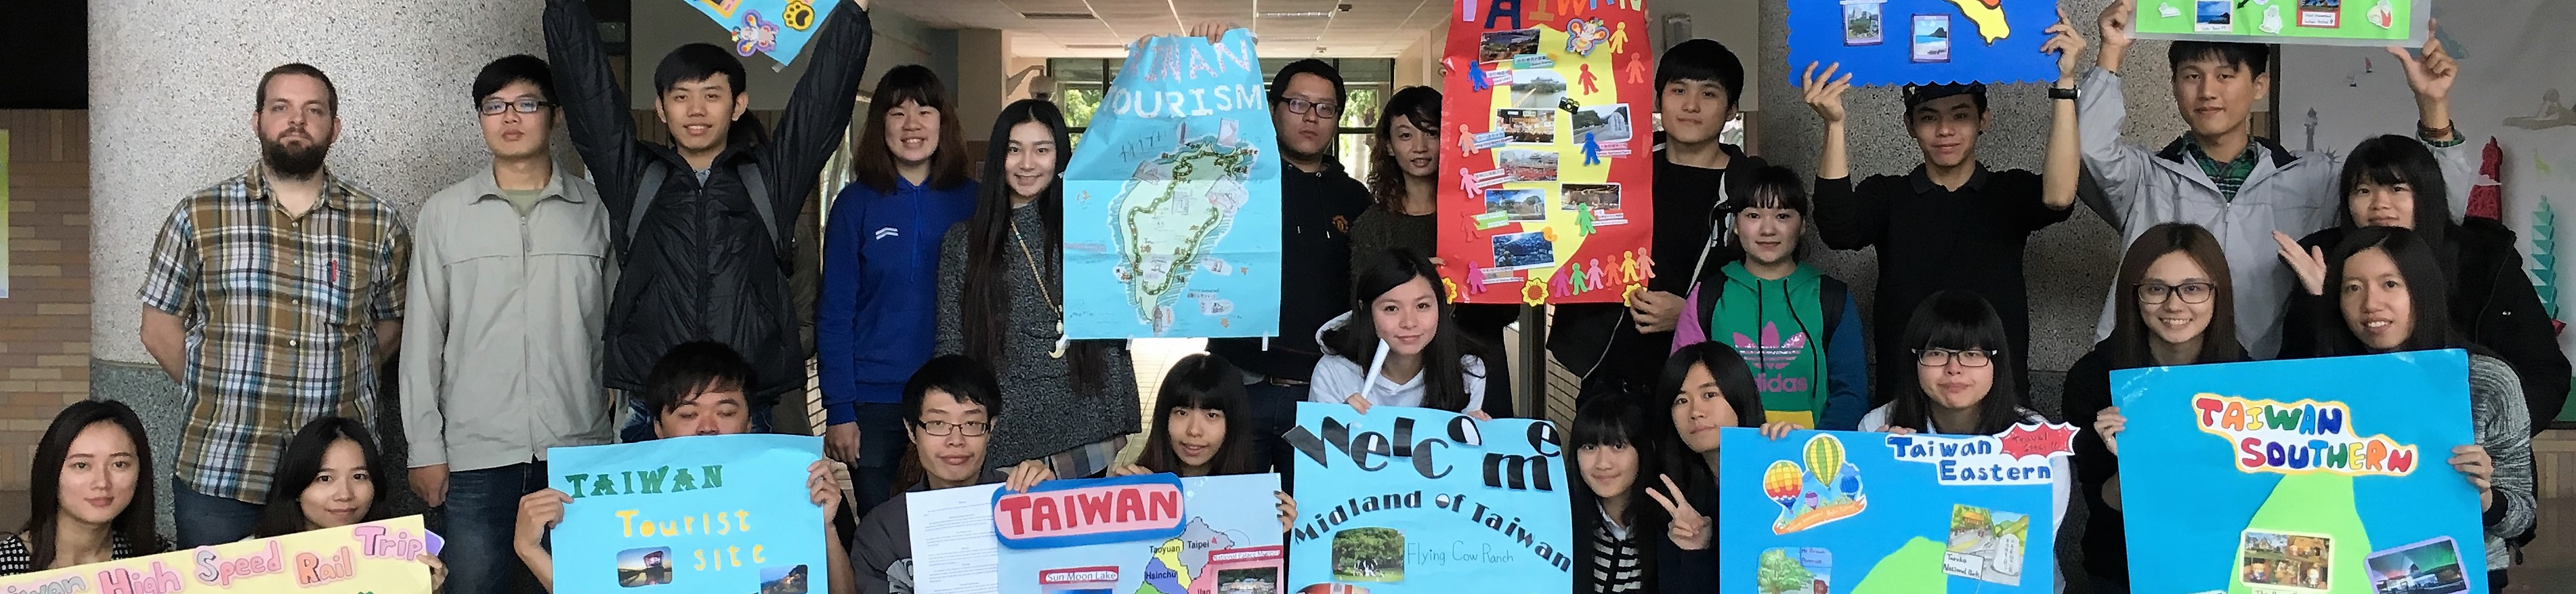 台灣英語景點導覽課程